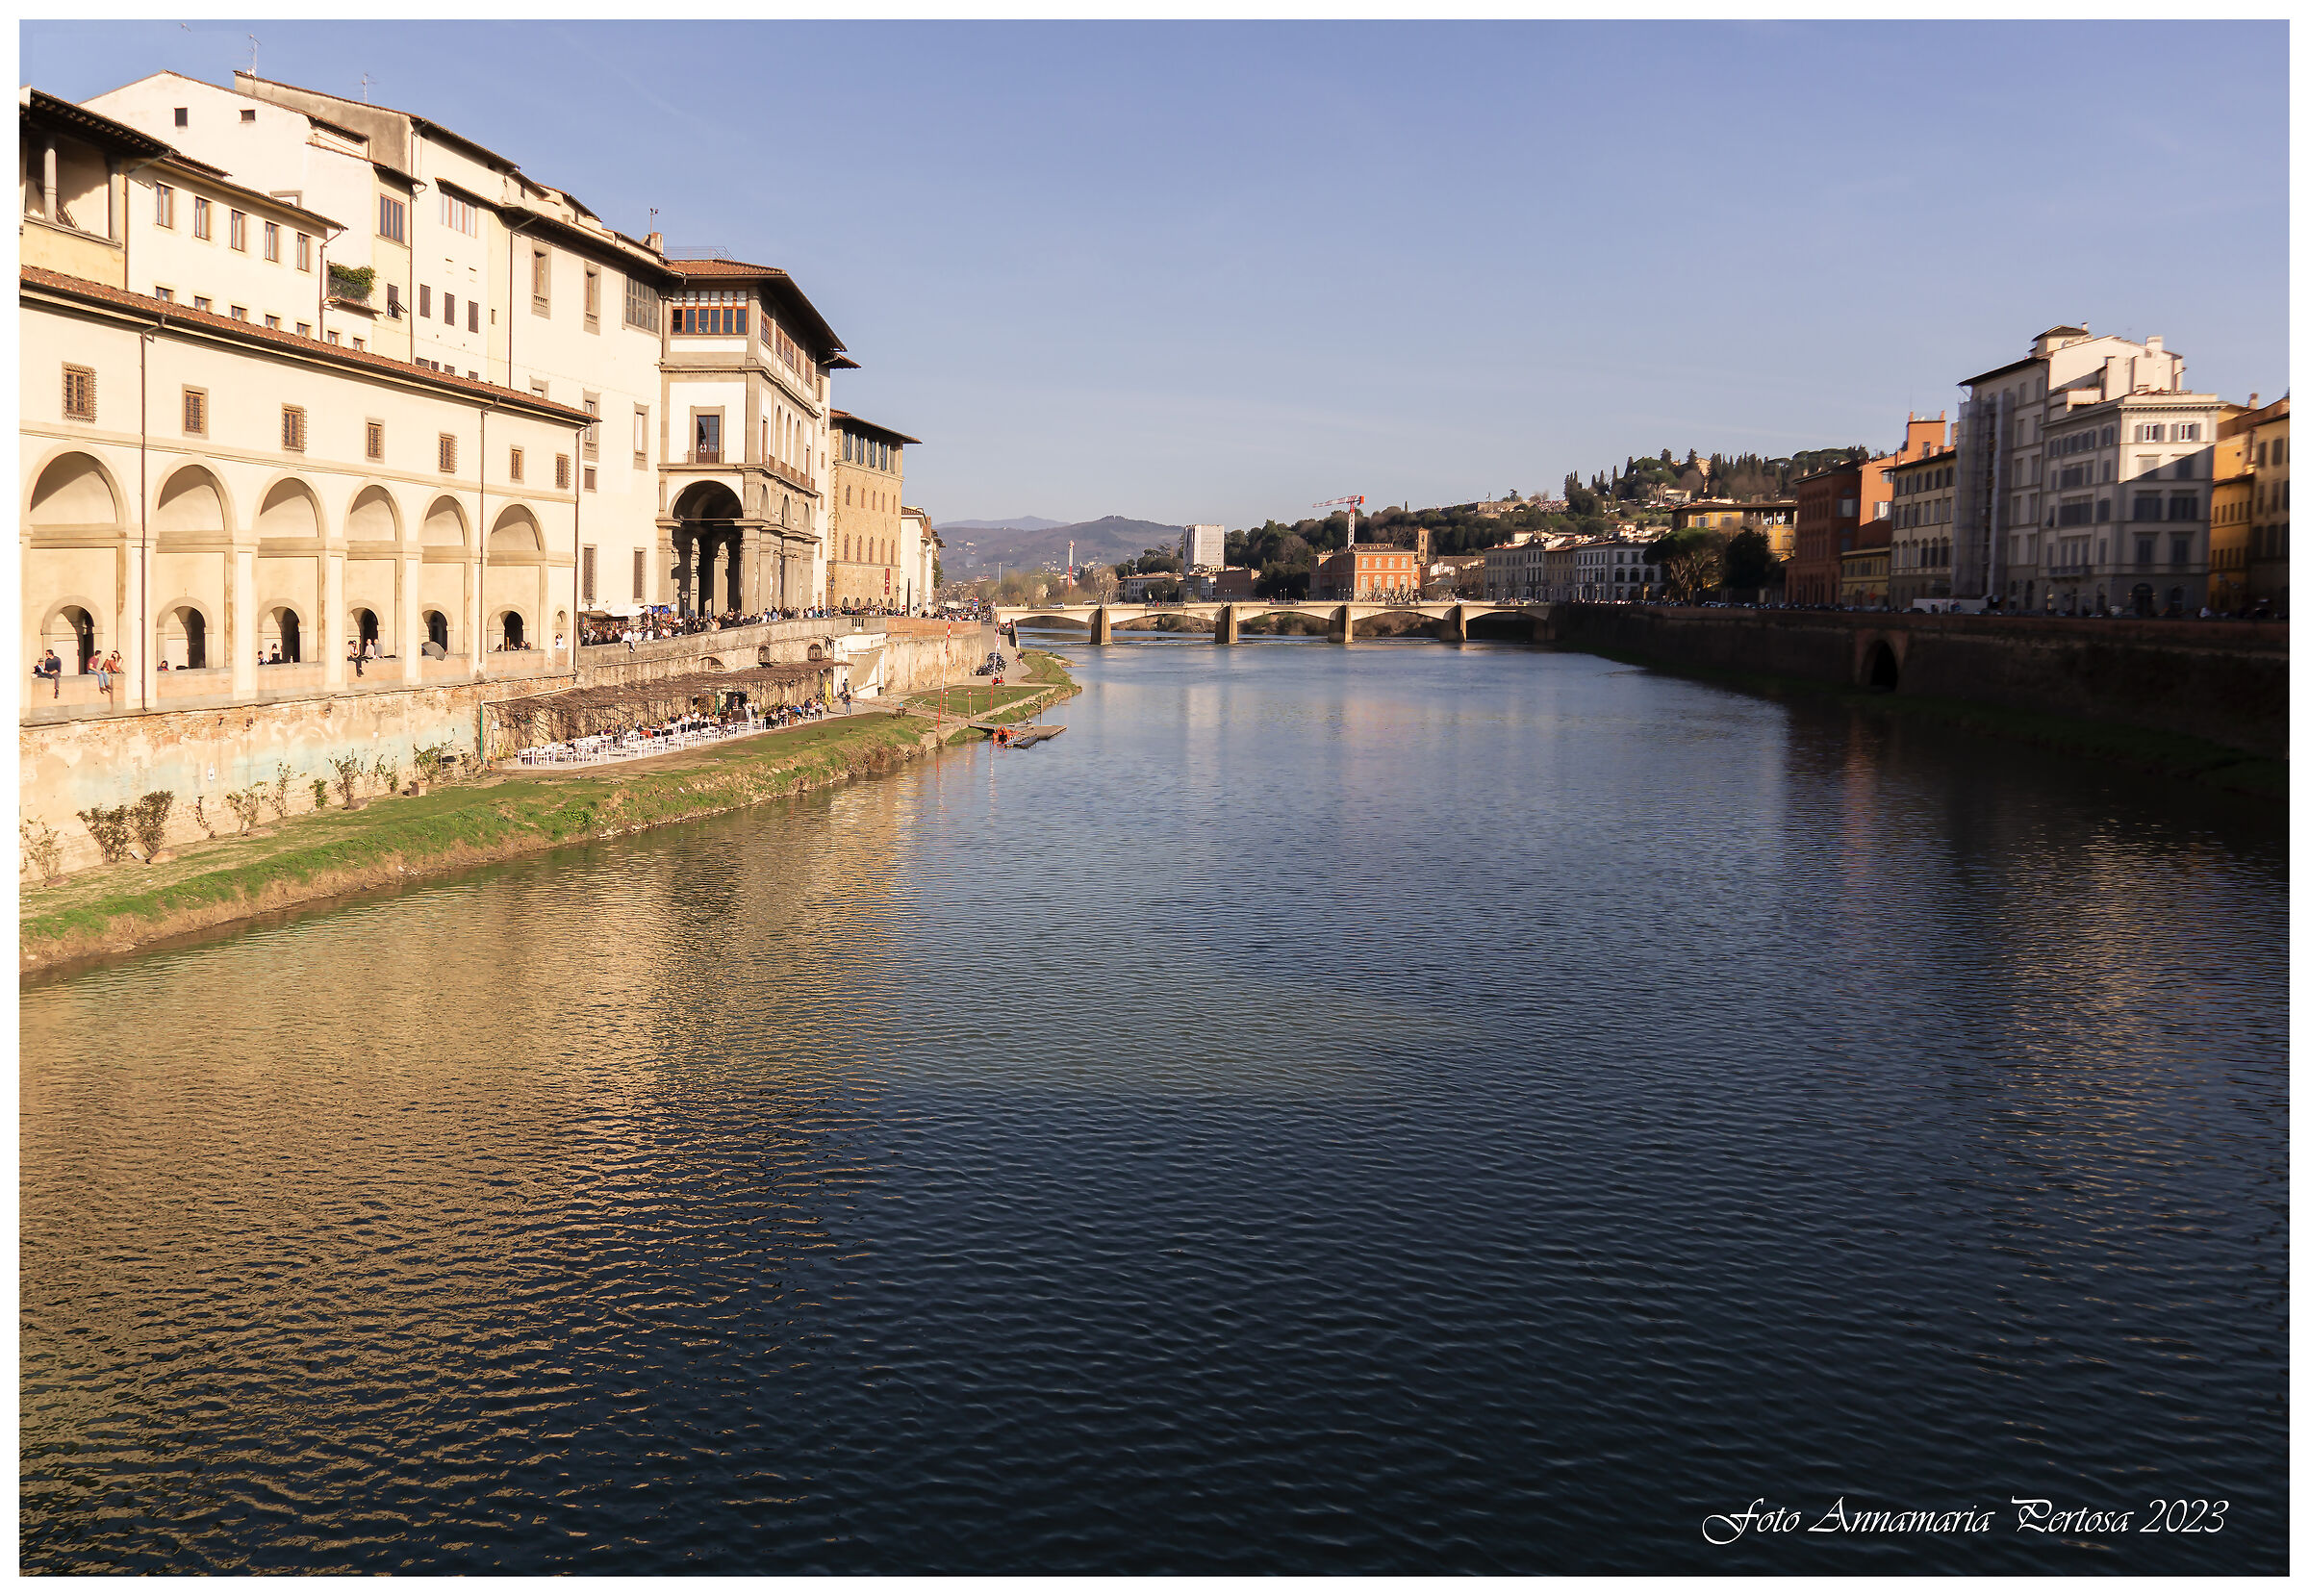 The Arno at Ponte Vecchio ...